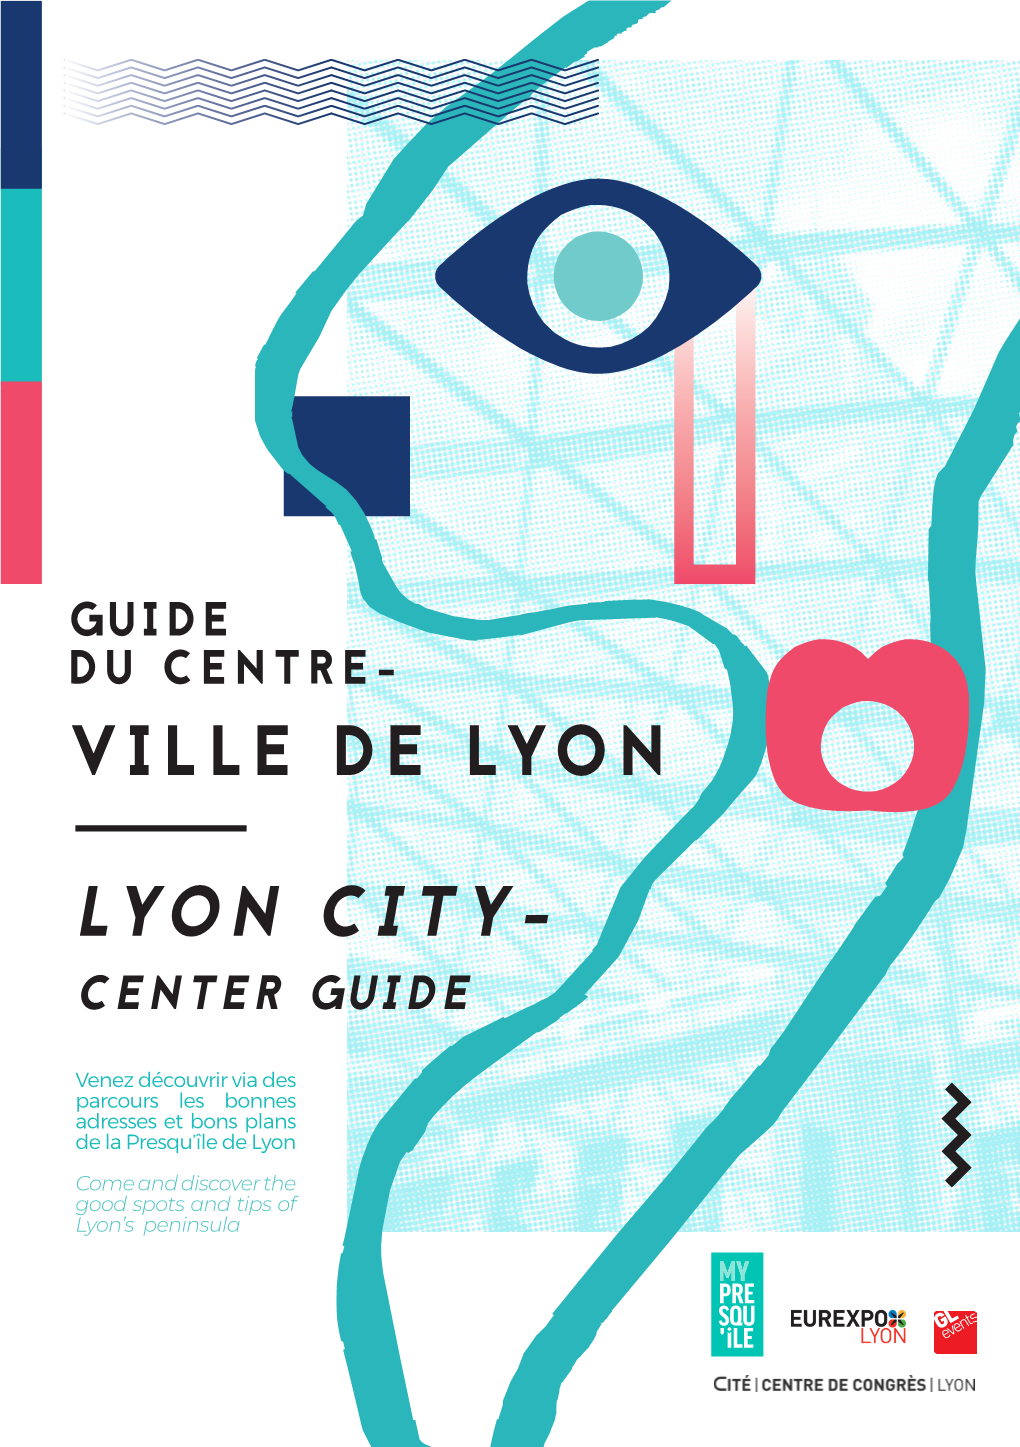 Lyon City- Center Guide